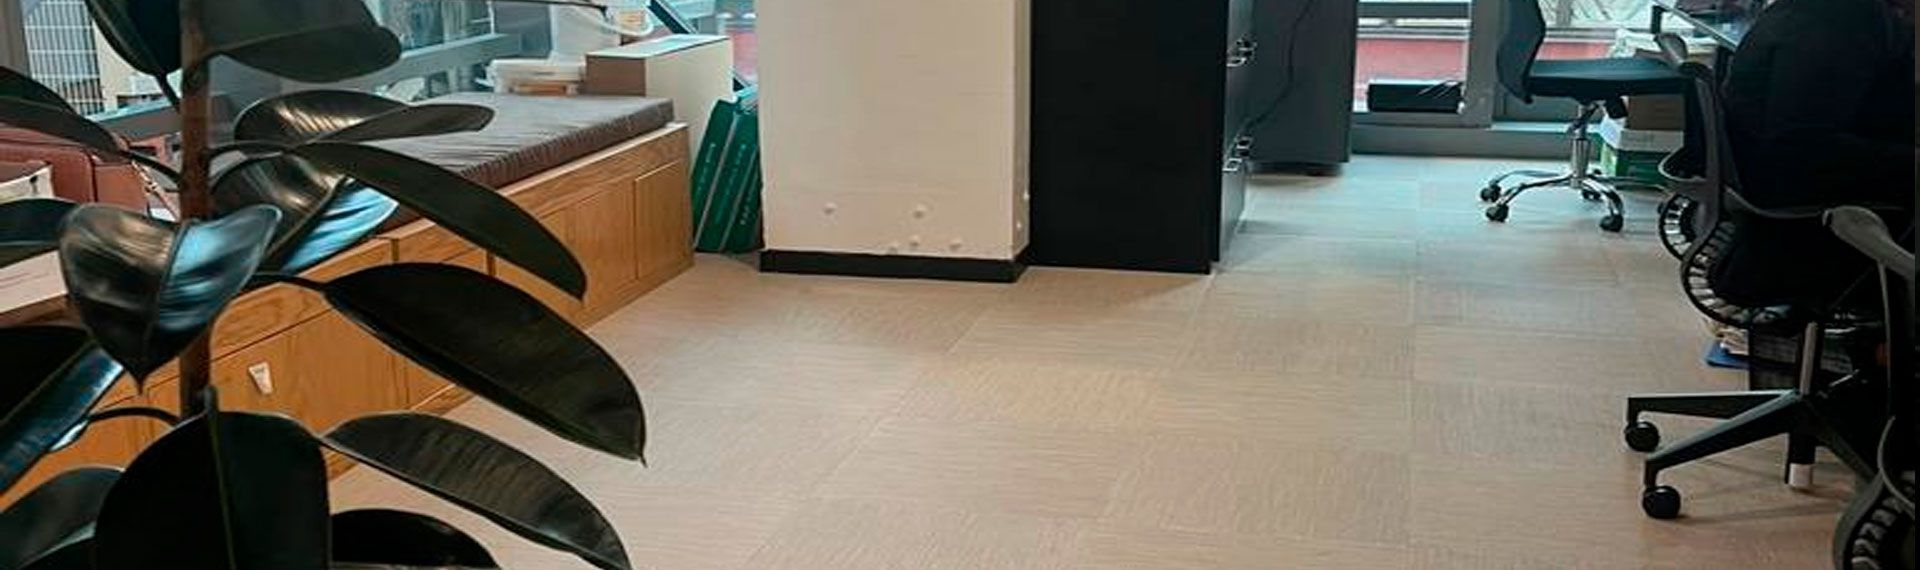 Oficina con piso de vinil tejido